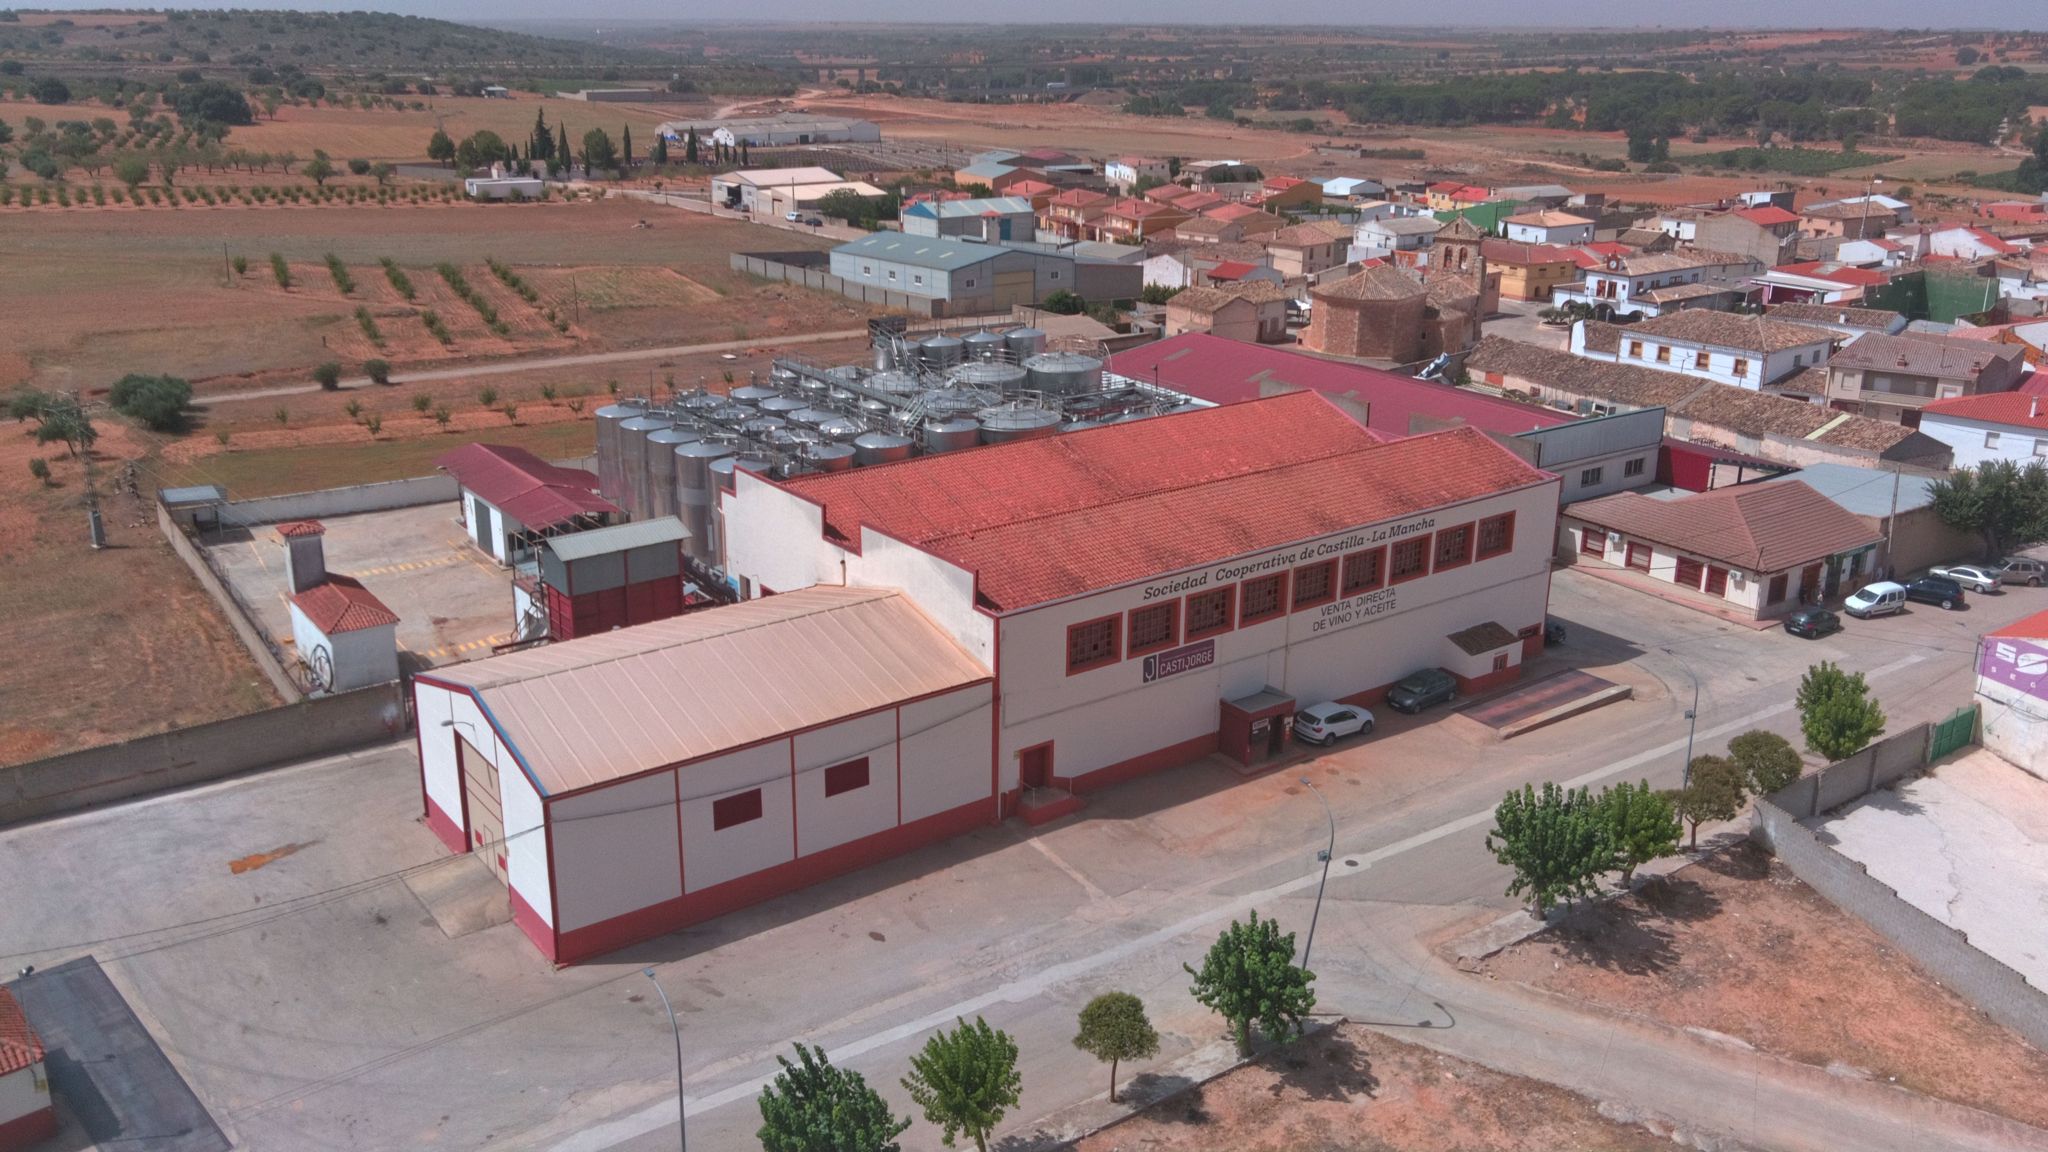 Foto aerea de CASTIJORGE Sociedad Cooperativa de Castilla-La Mancha